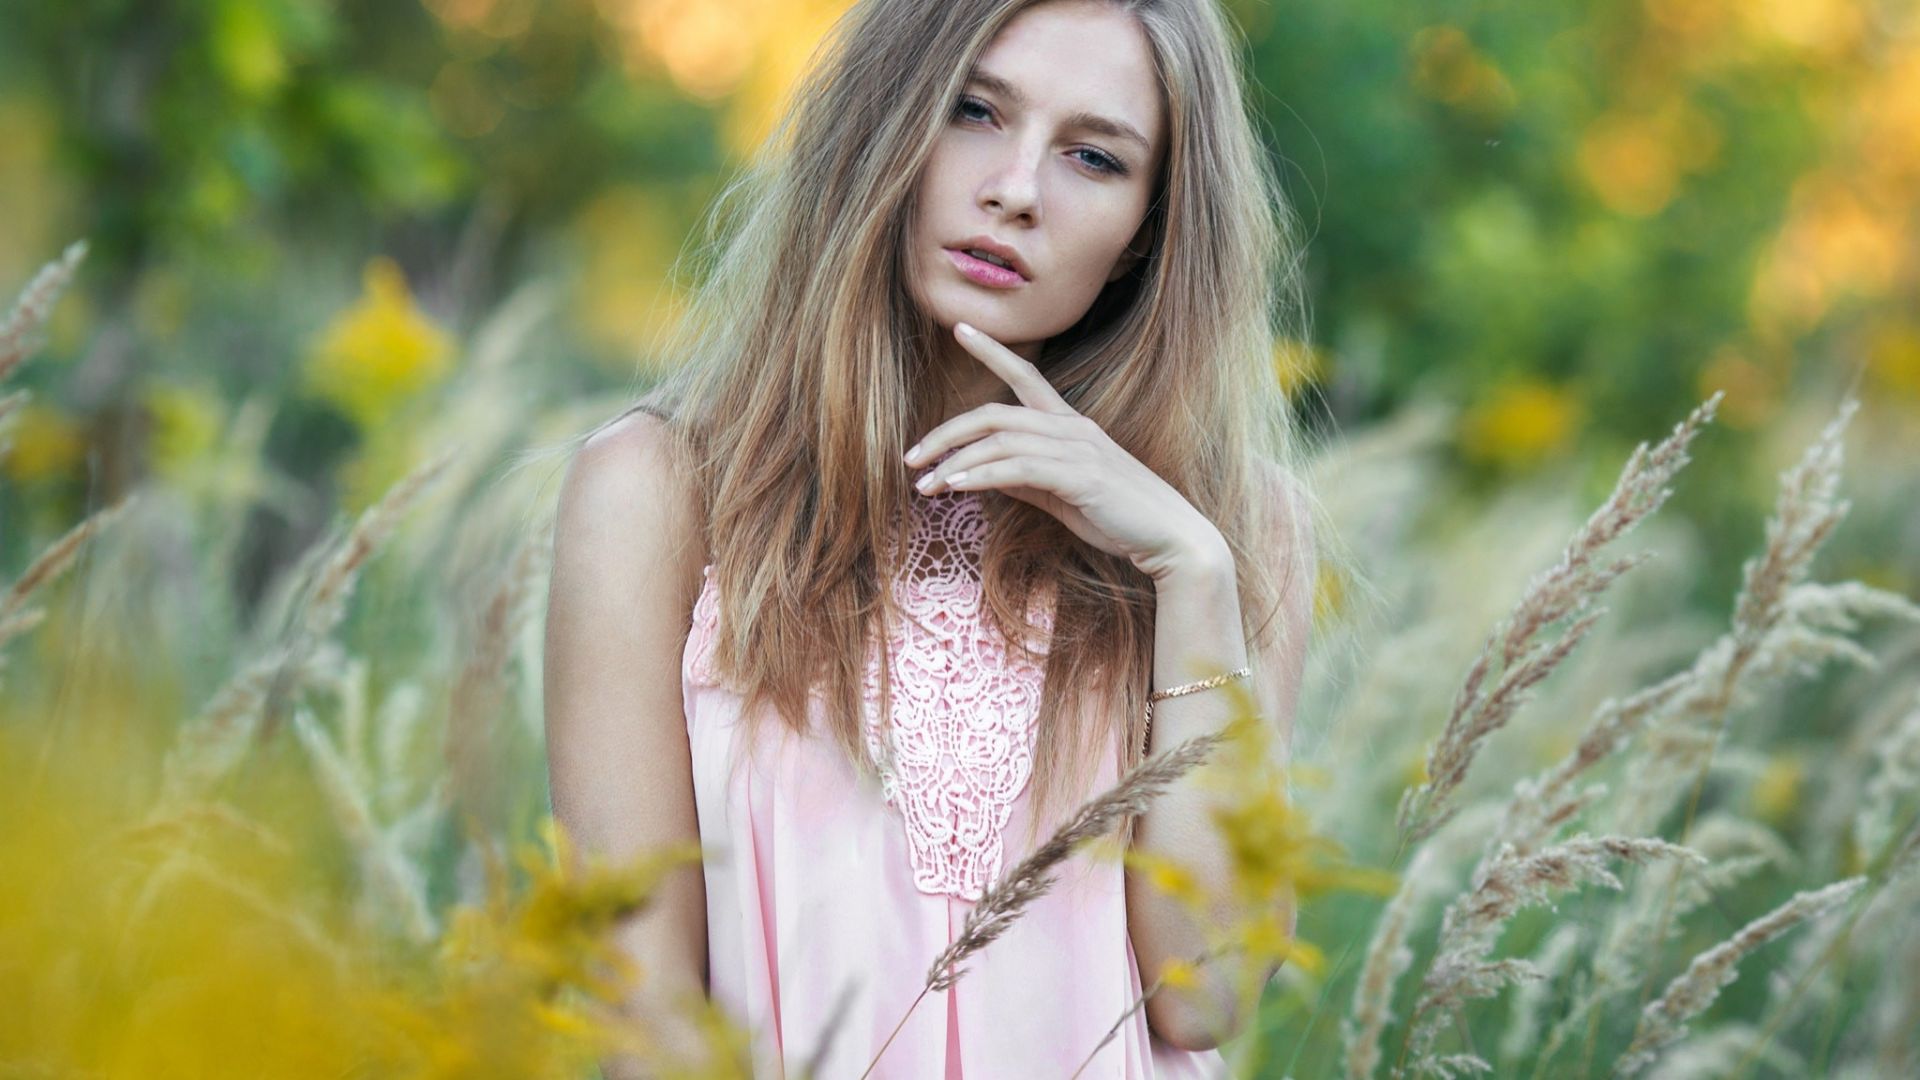 Wallpaper Blonde, model, grass field, outdoor